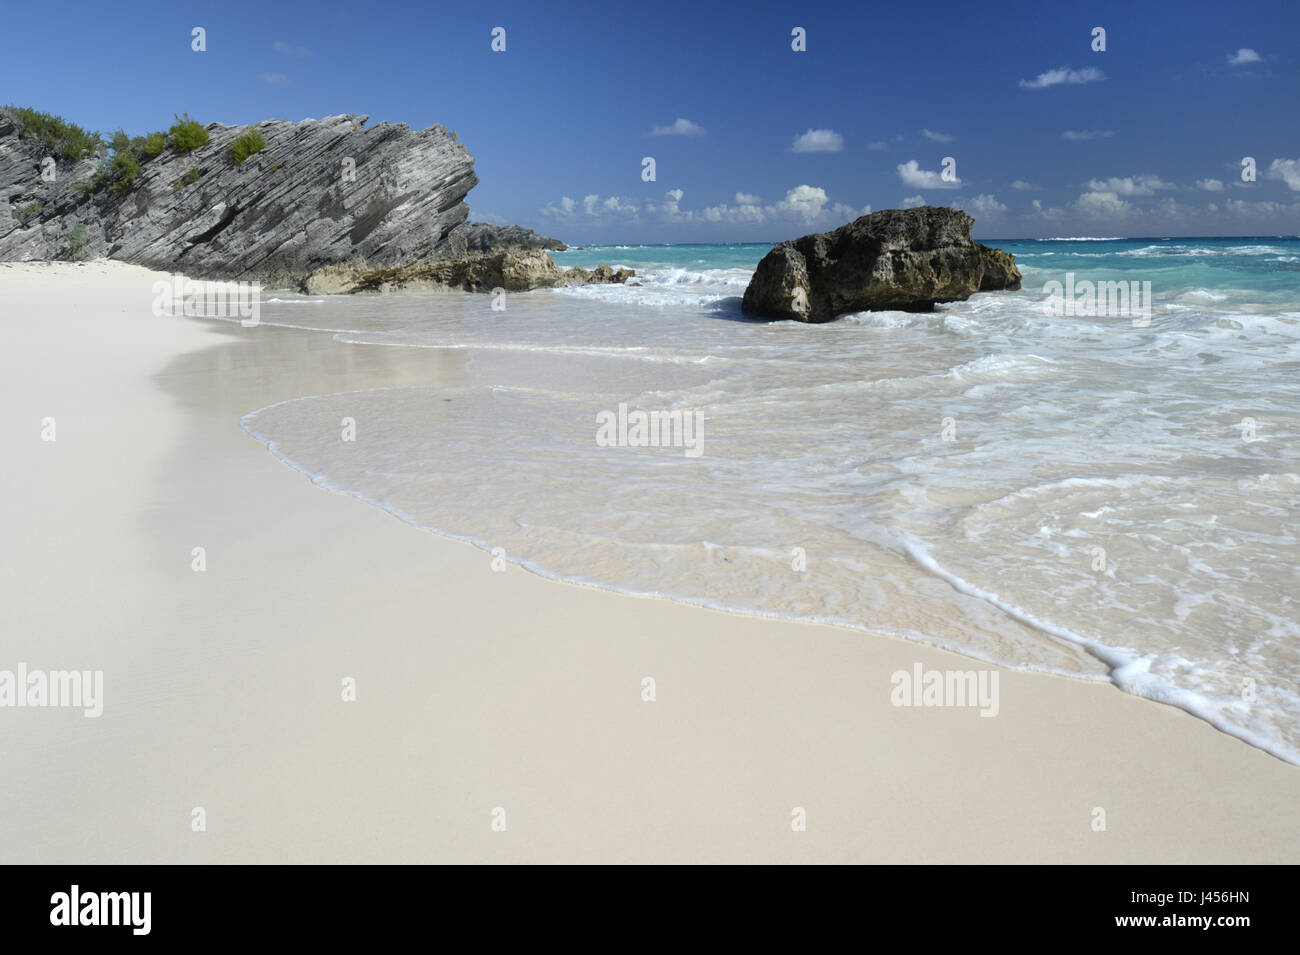 Idyllische Sandstrand auf der Insel Bermuda, ein Britisches Territorium im Nordatlantik. Stockfoto